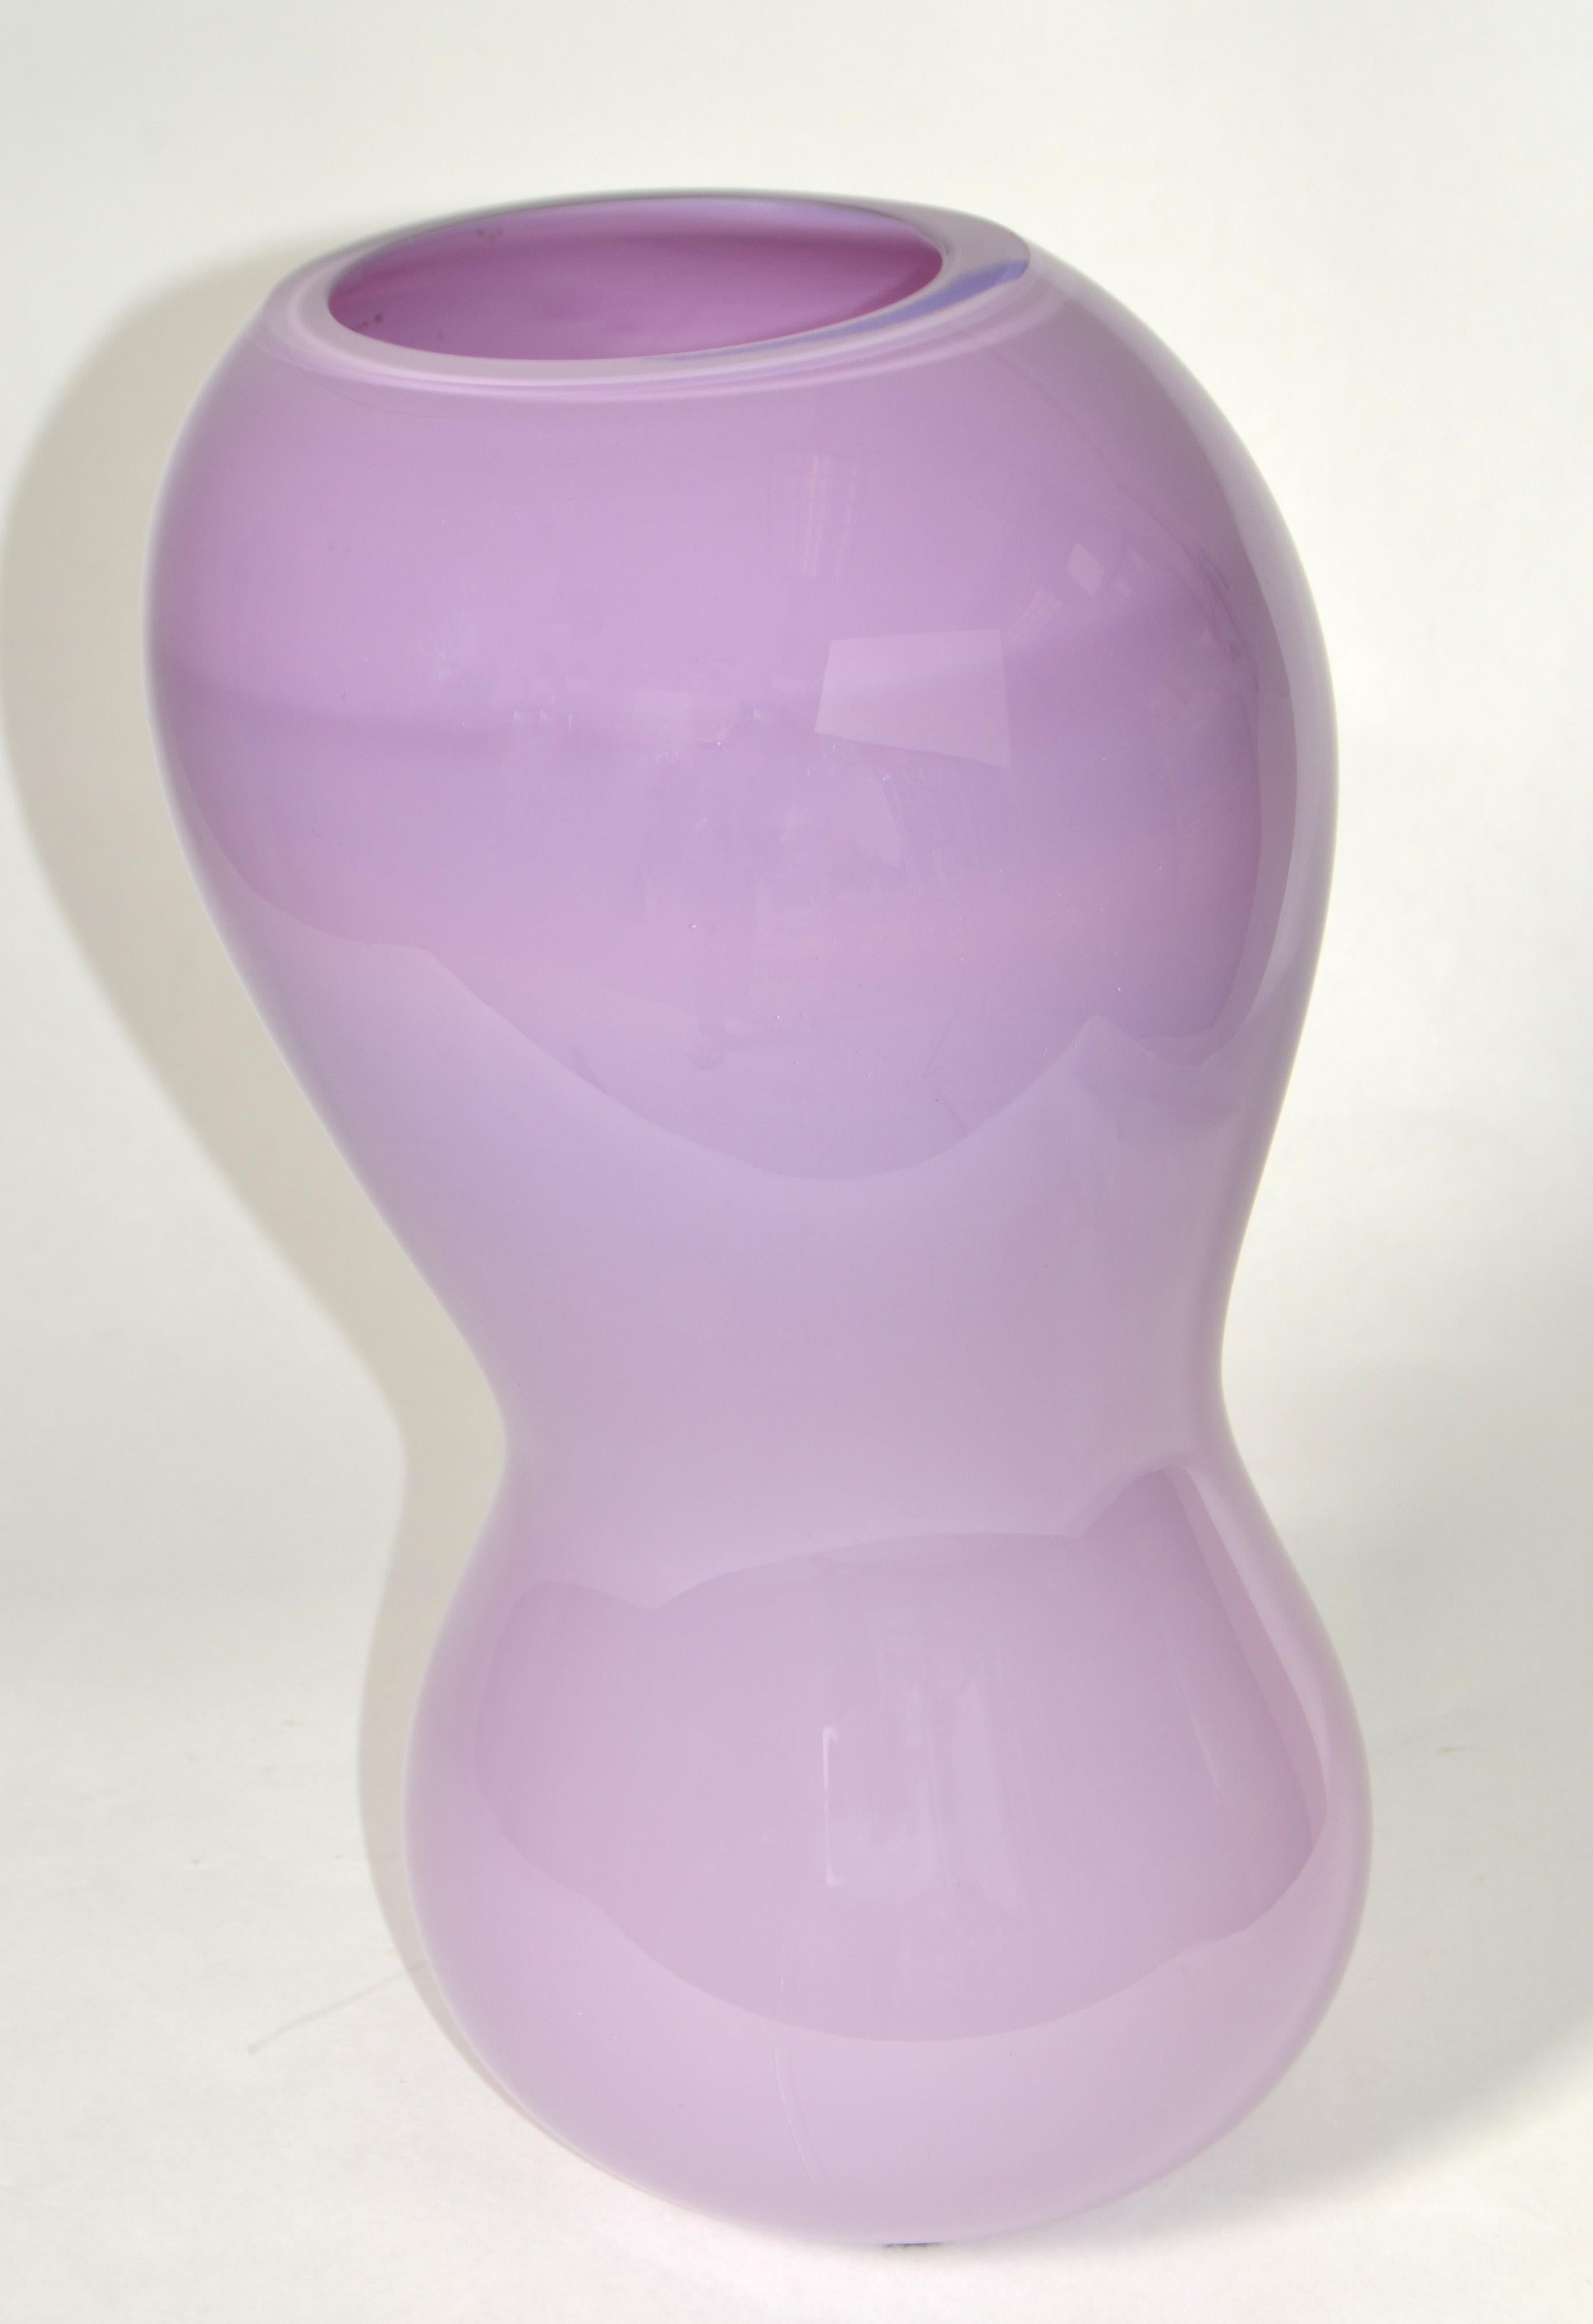 1992 Nigel Coates England Modern Encased Lavender Art Glass Vase Salvati Italy   For Sale 6